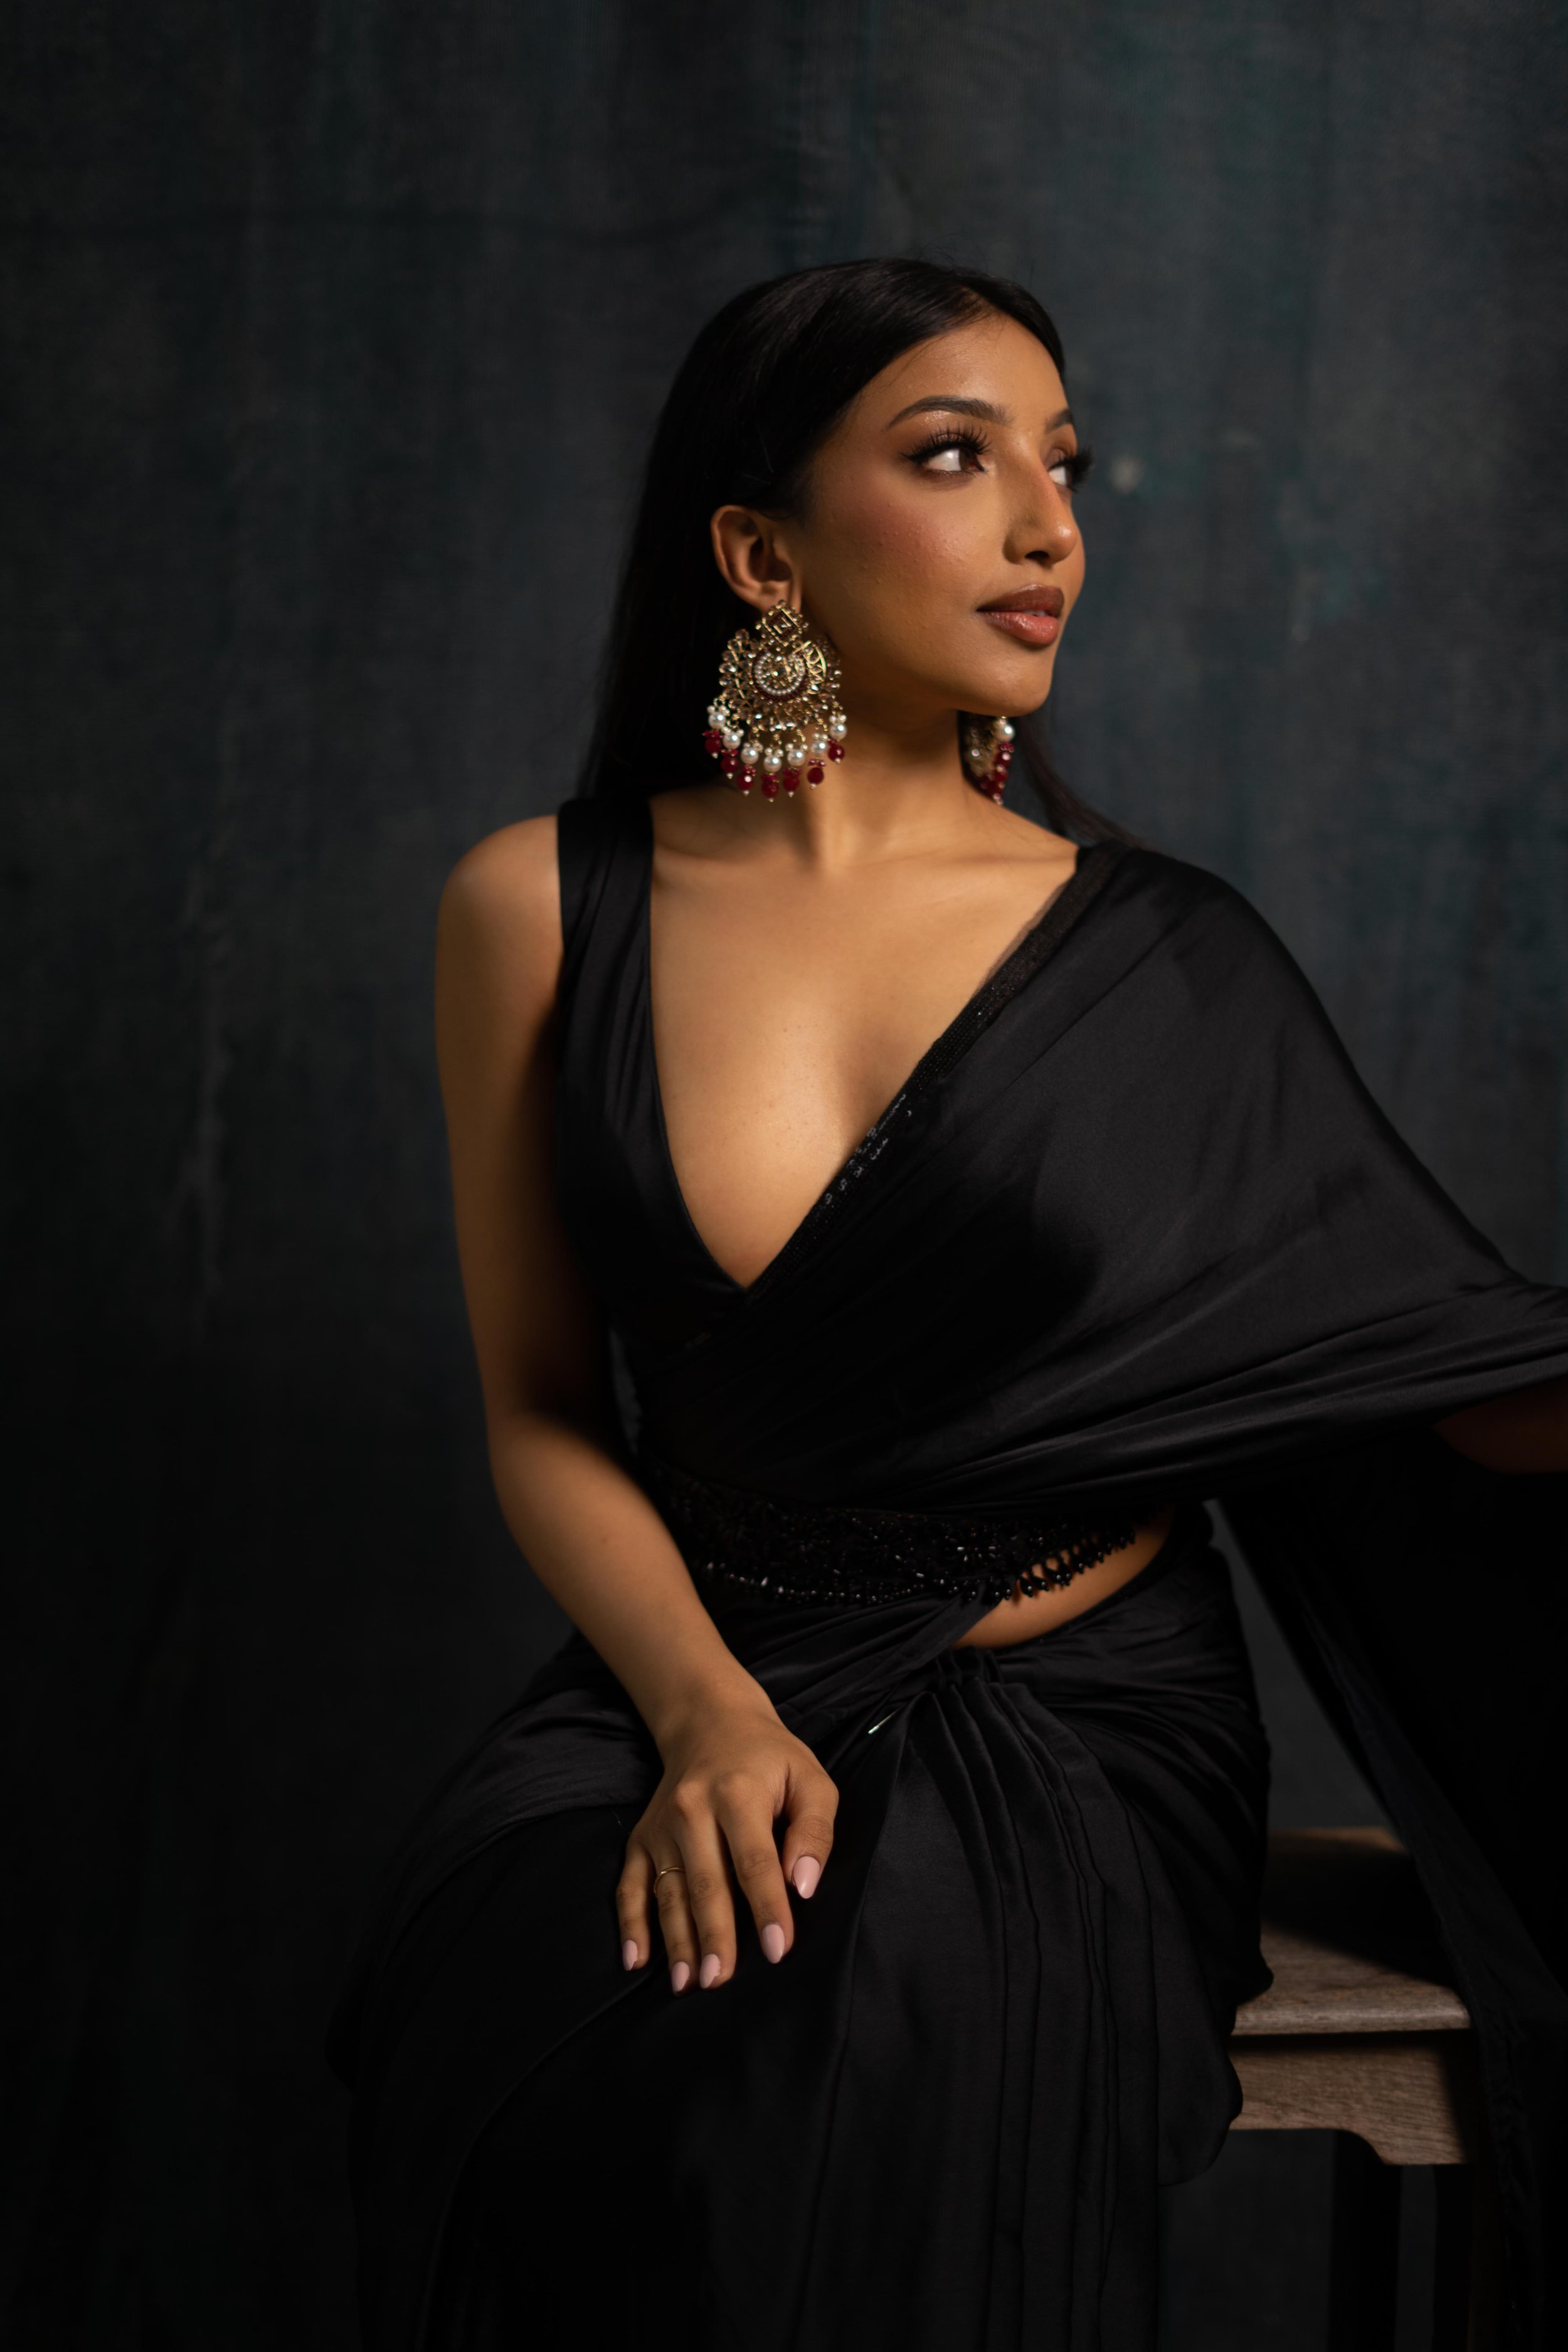 Details more than 165 black saree dress super hot